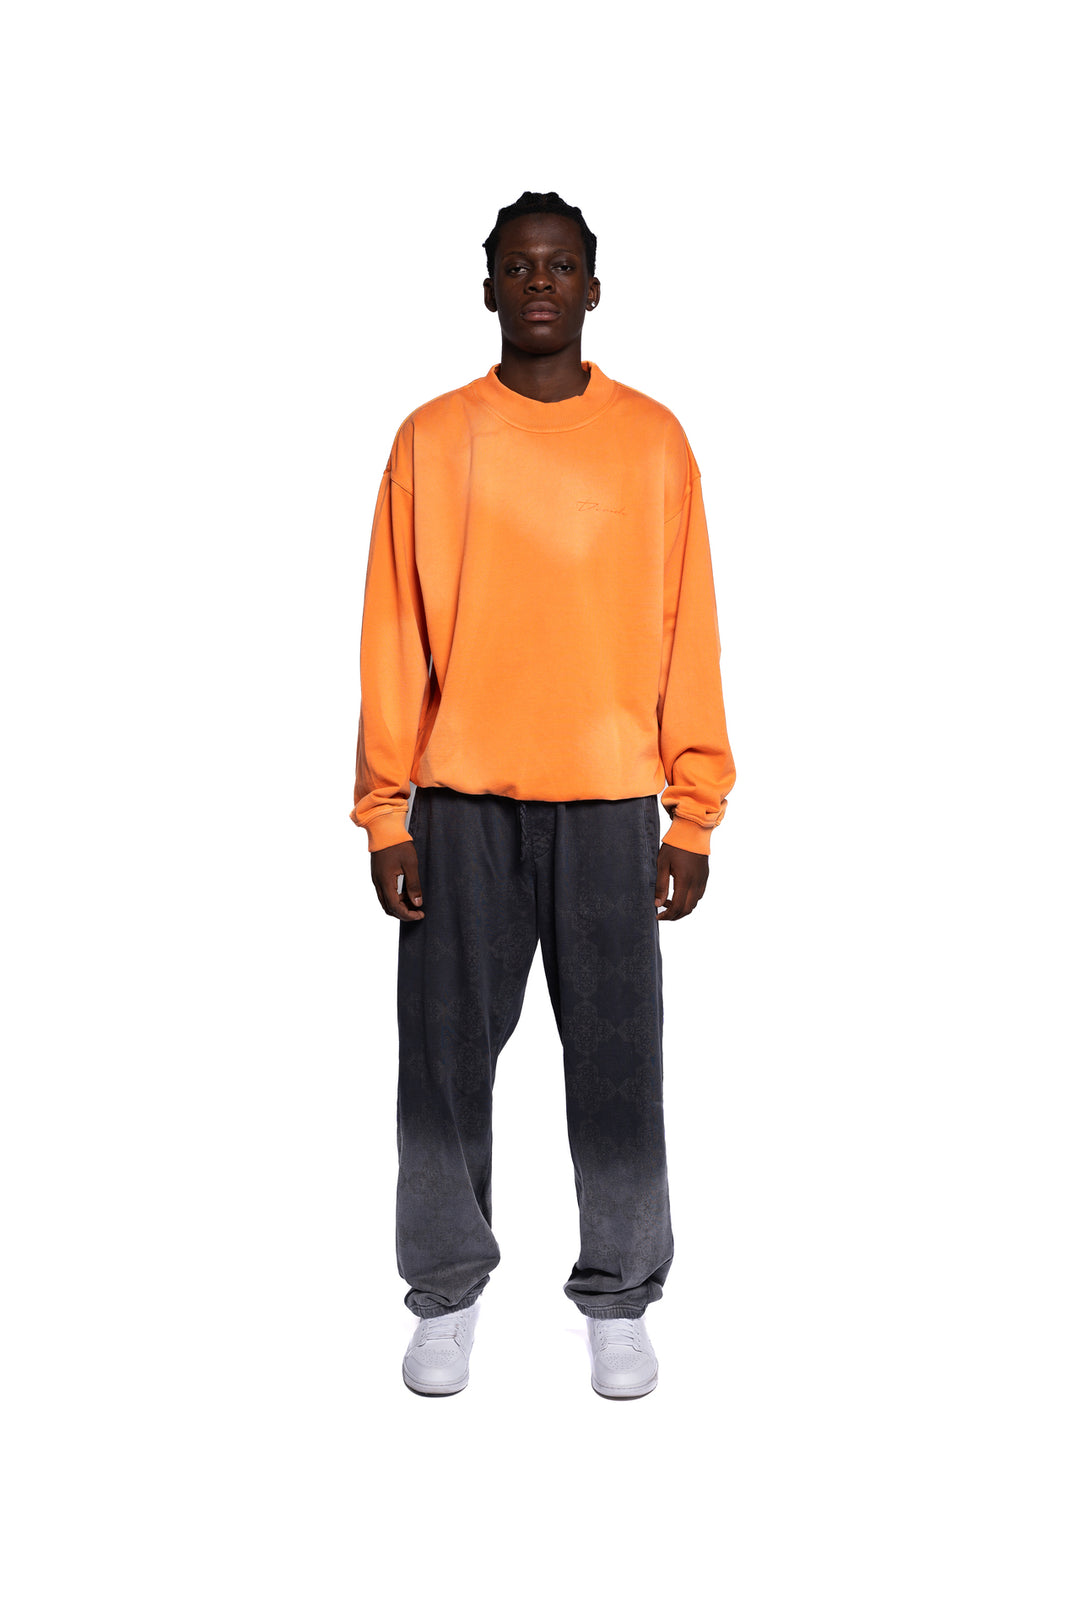 Decider Classics Urban Sweatshirt in strahlendem Orange, getragen von einem Herren